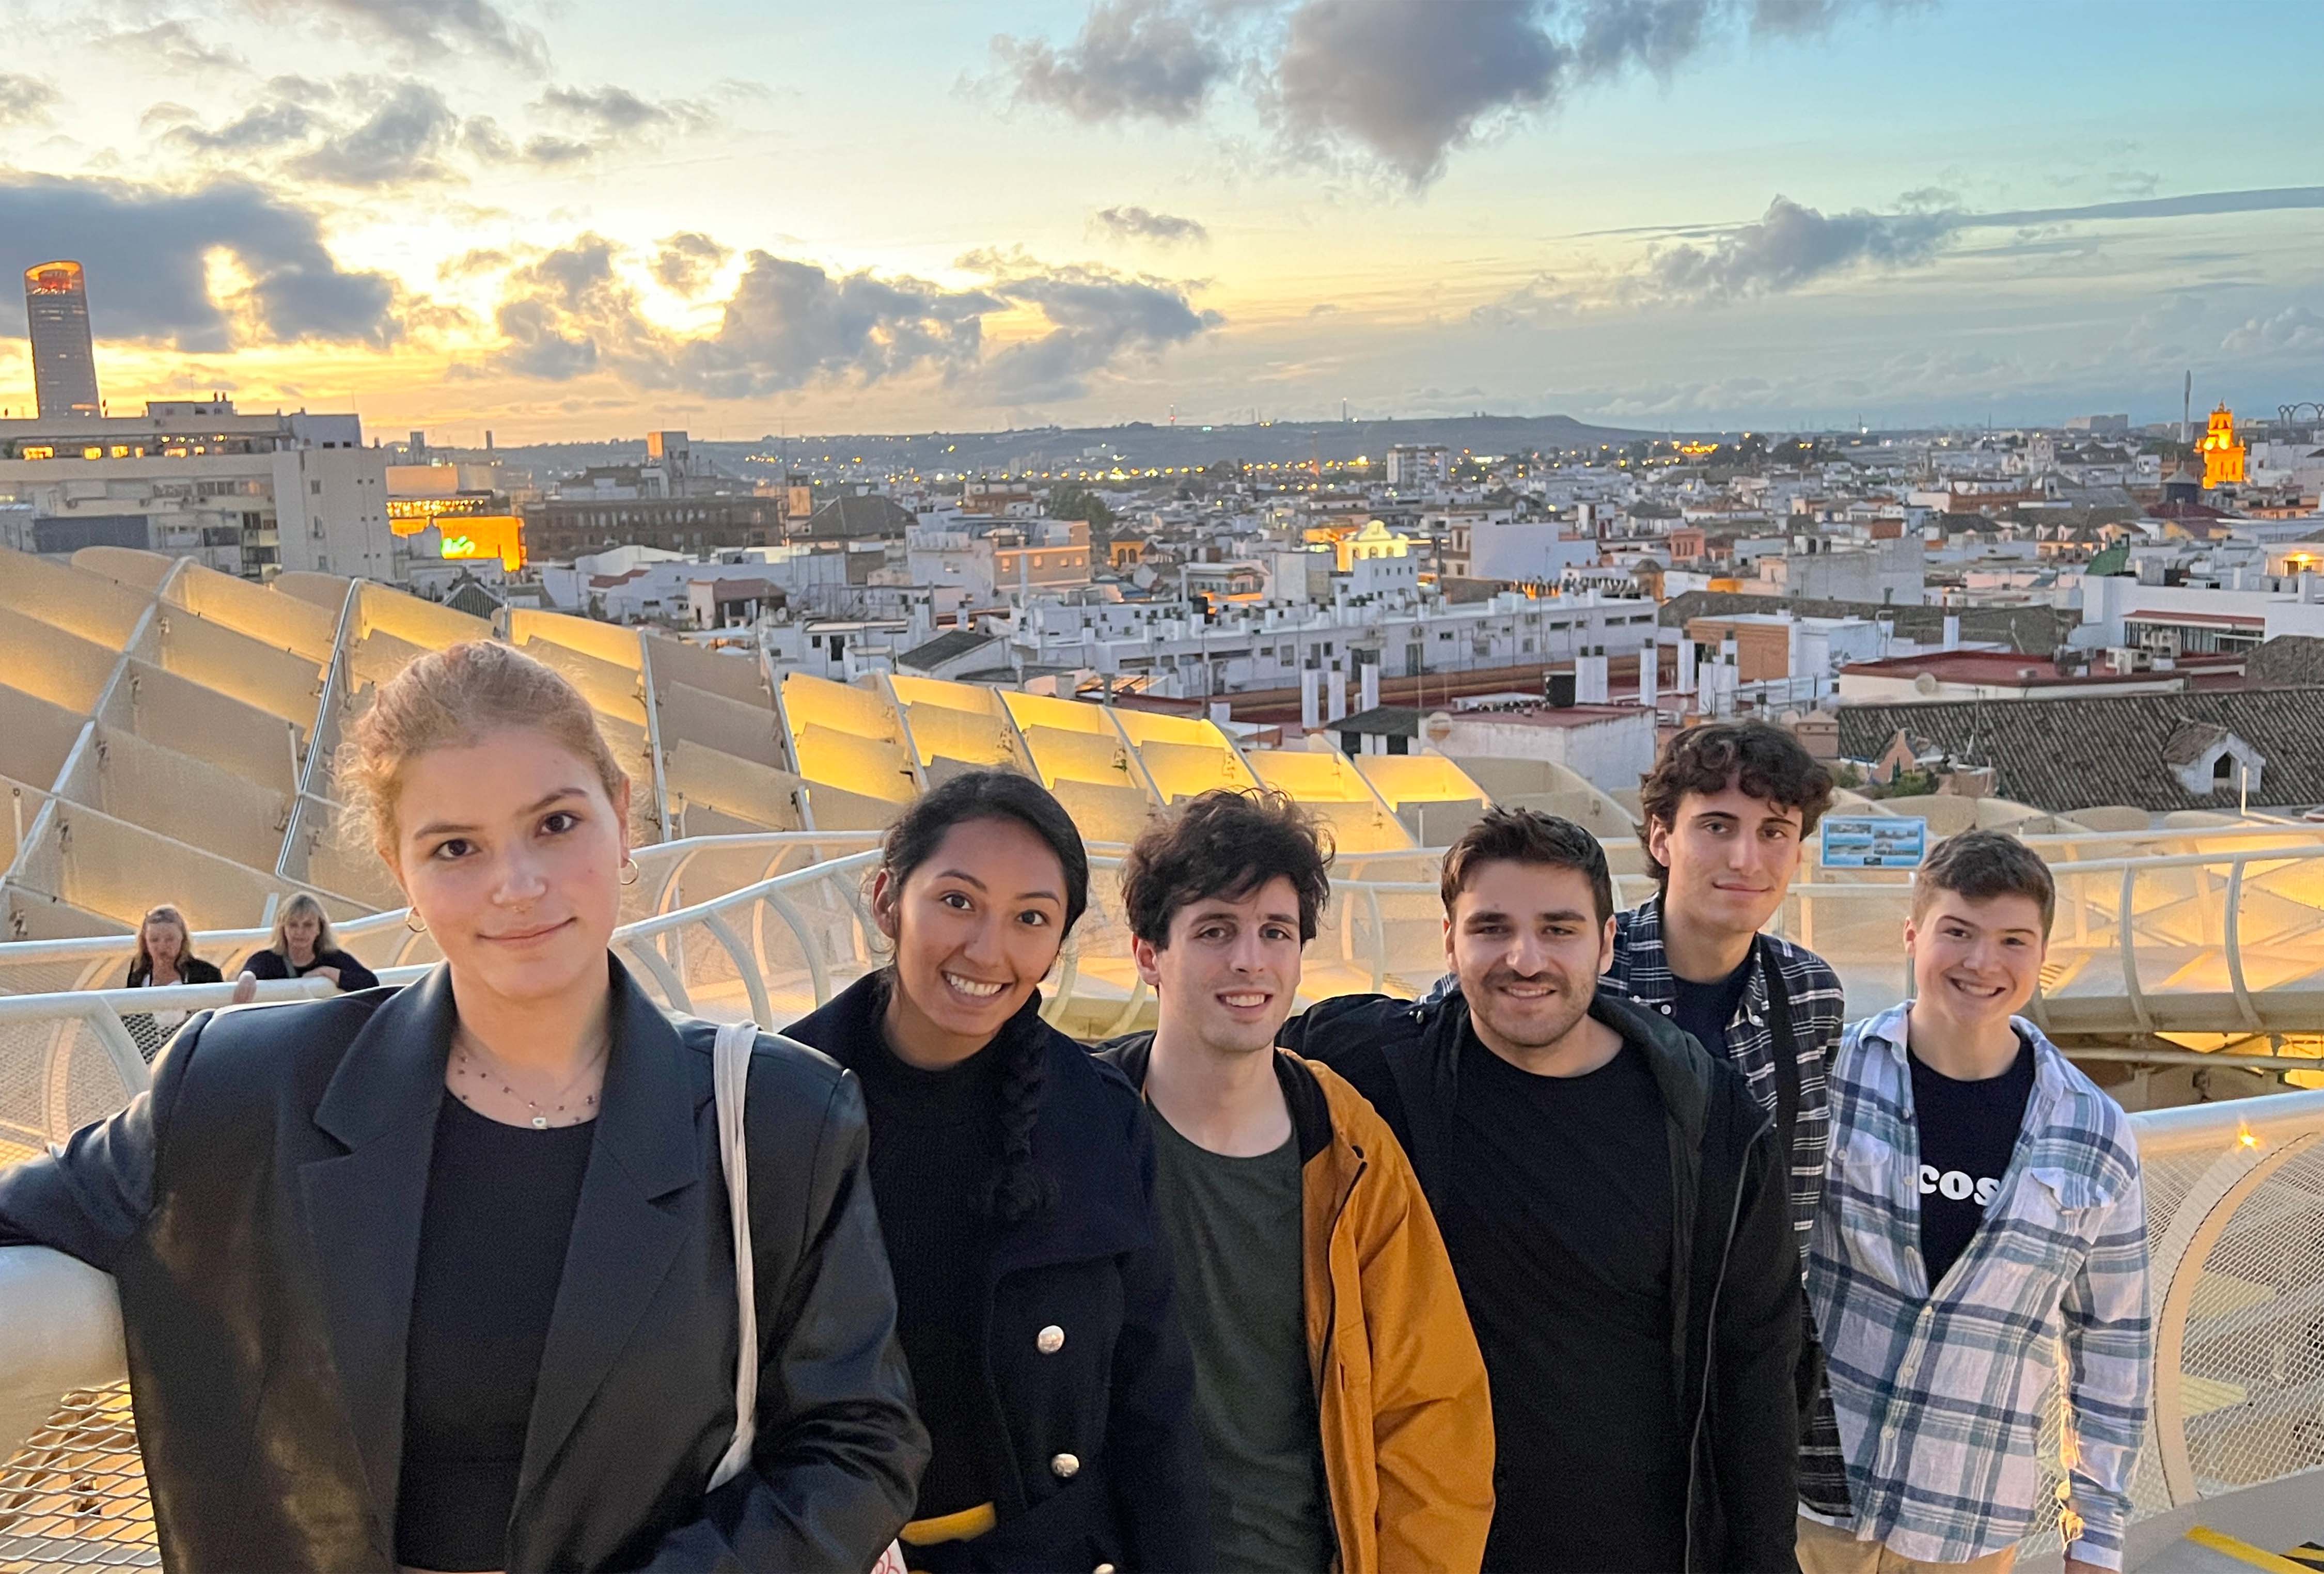 Students Ariel Weiss, Jake Levy, Jake Kroft, Luke De Bartolo, Sadberk Agma, and Daniela Diaz on top of Metropol Parasol in Seville, Spain.